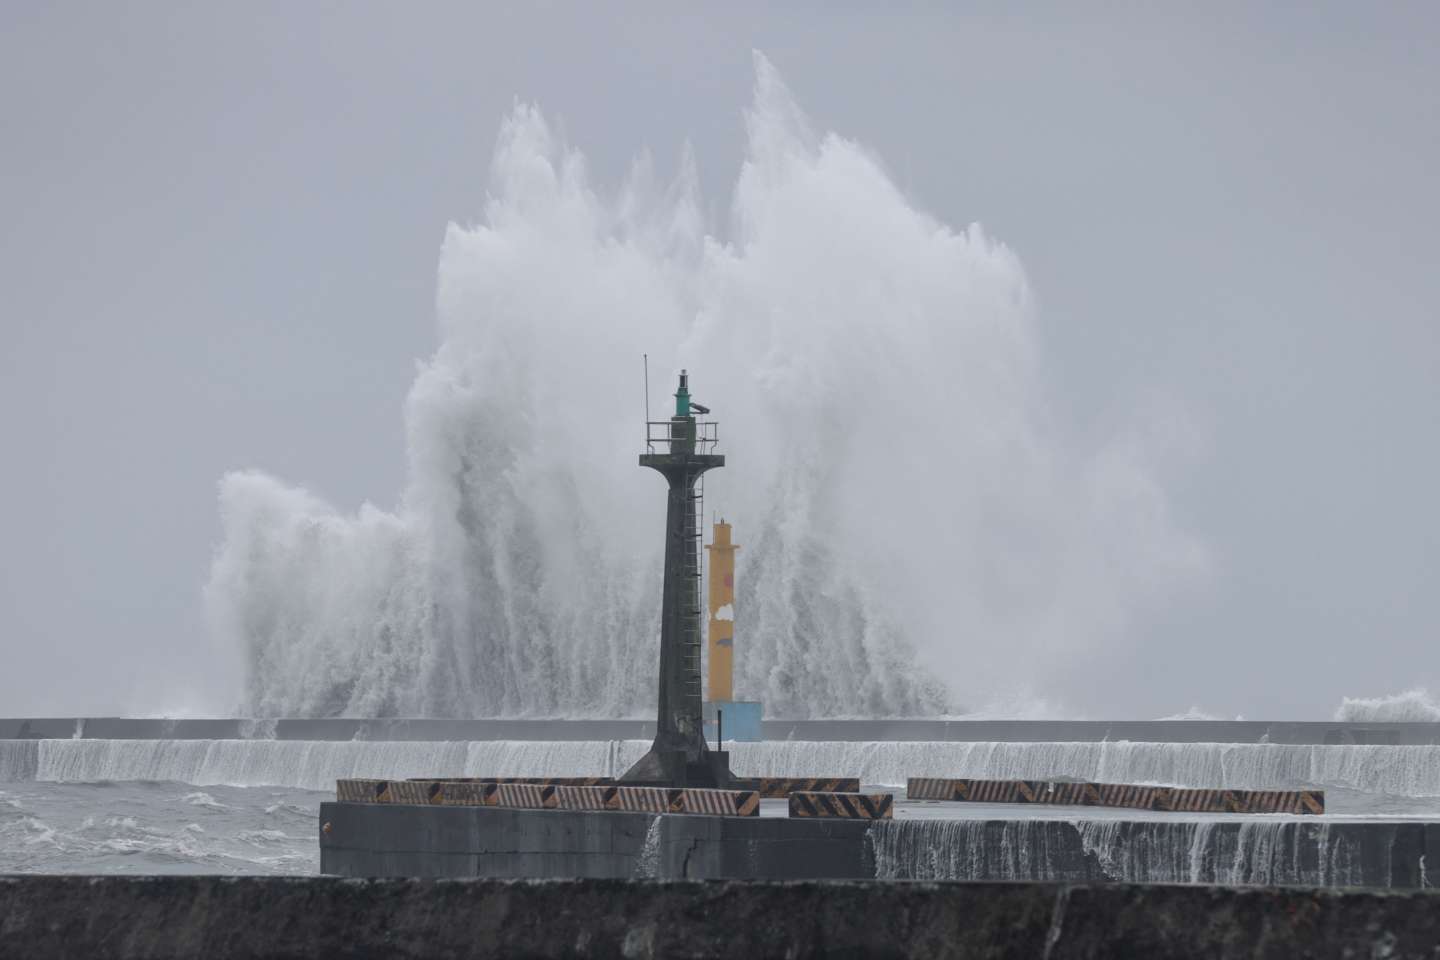 Le typhon Haikui en approche de Taïwan, près de 3 000 personnes évacuées